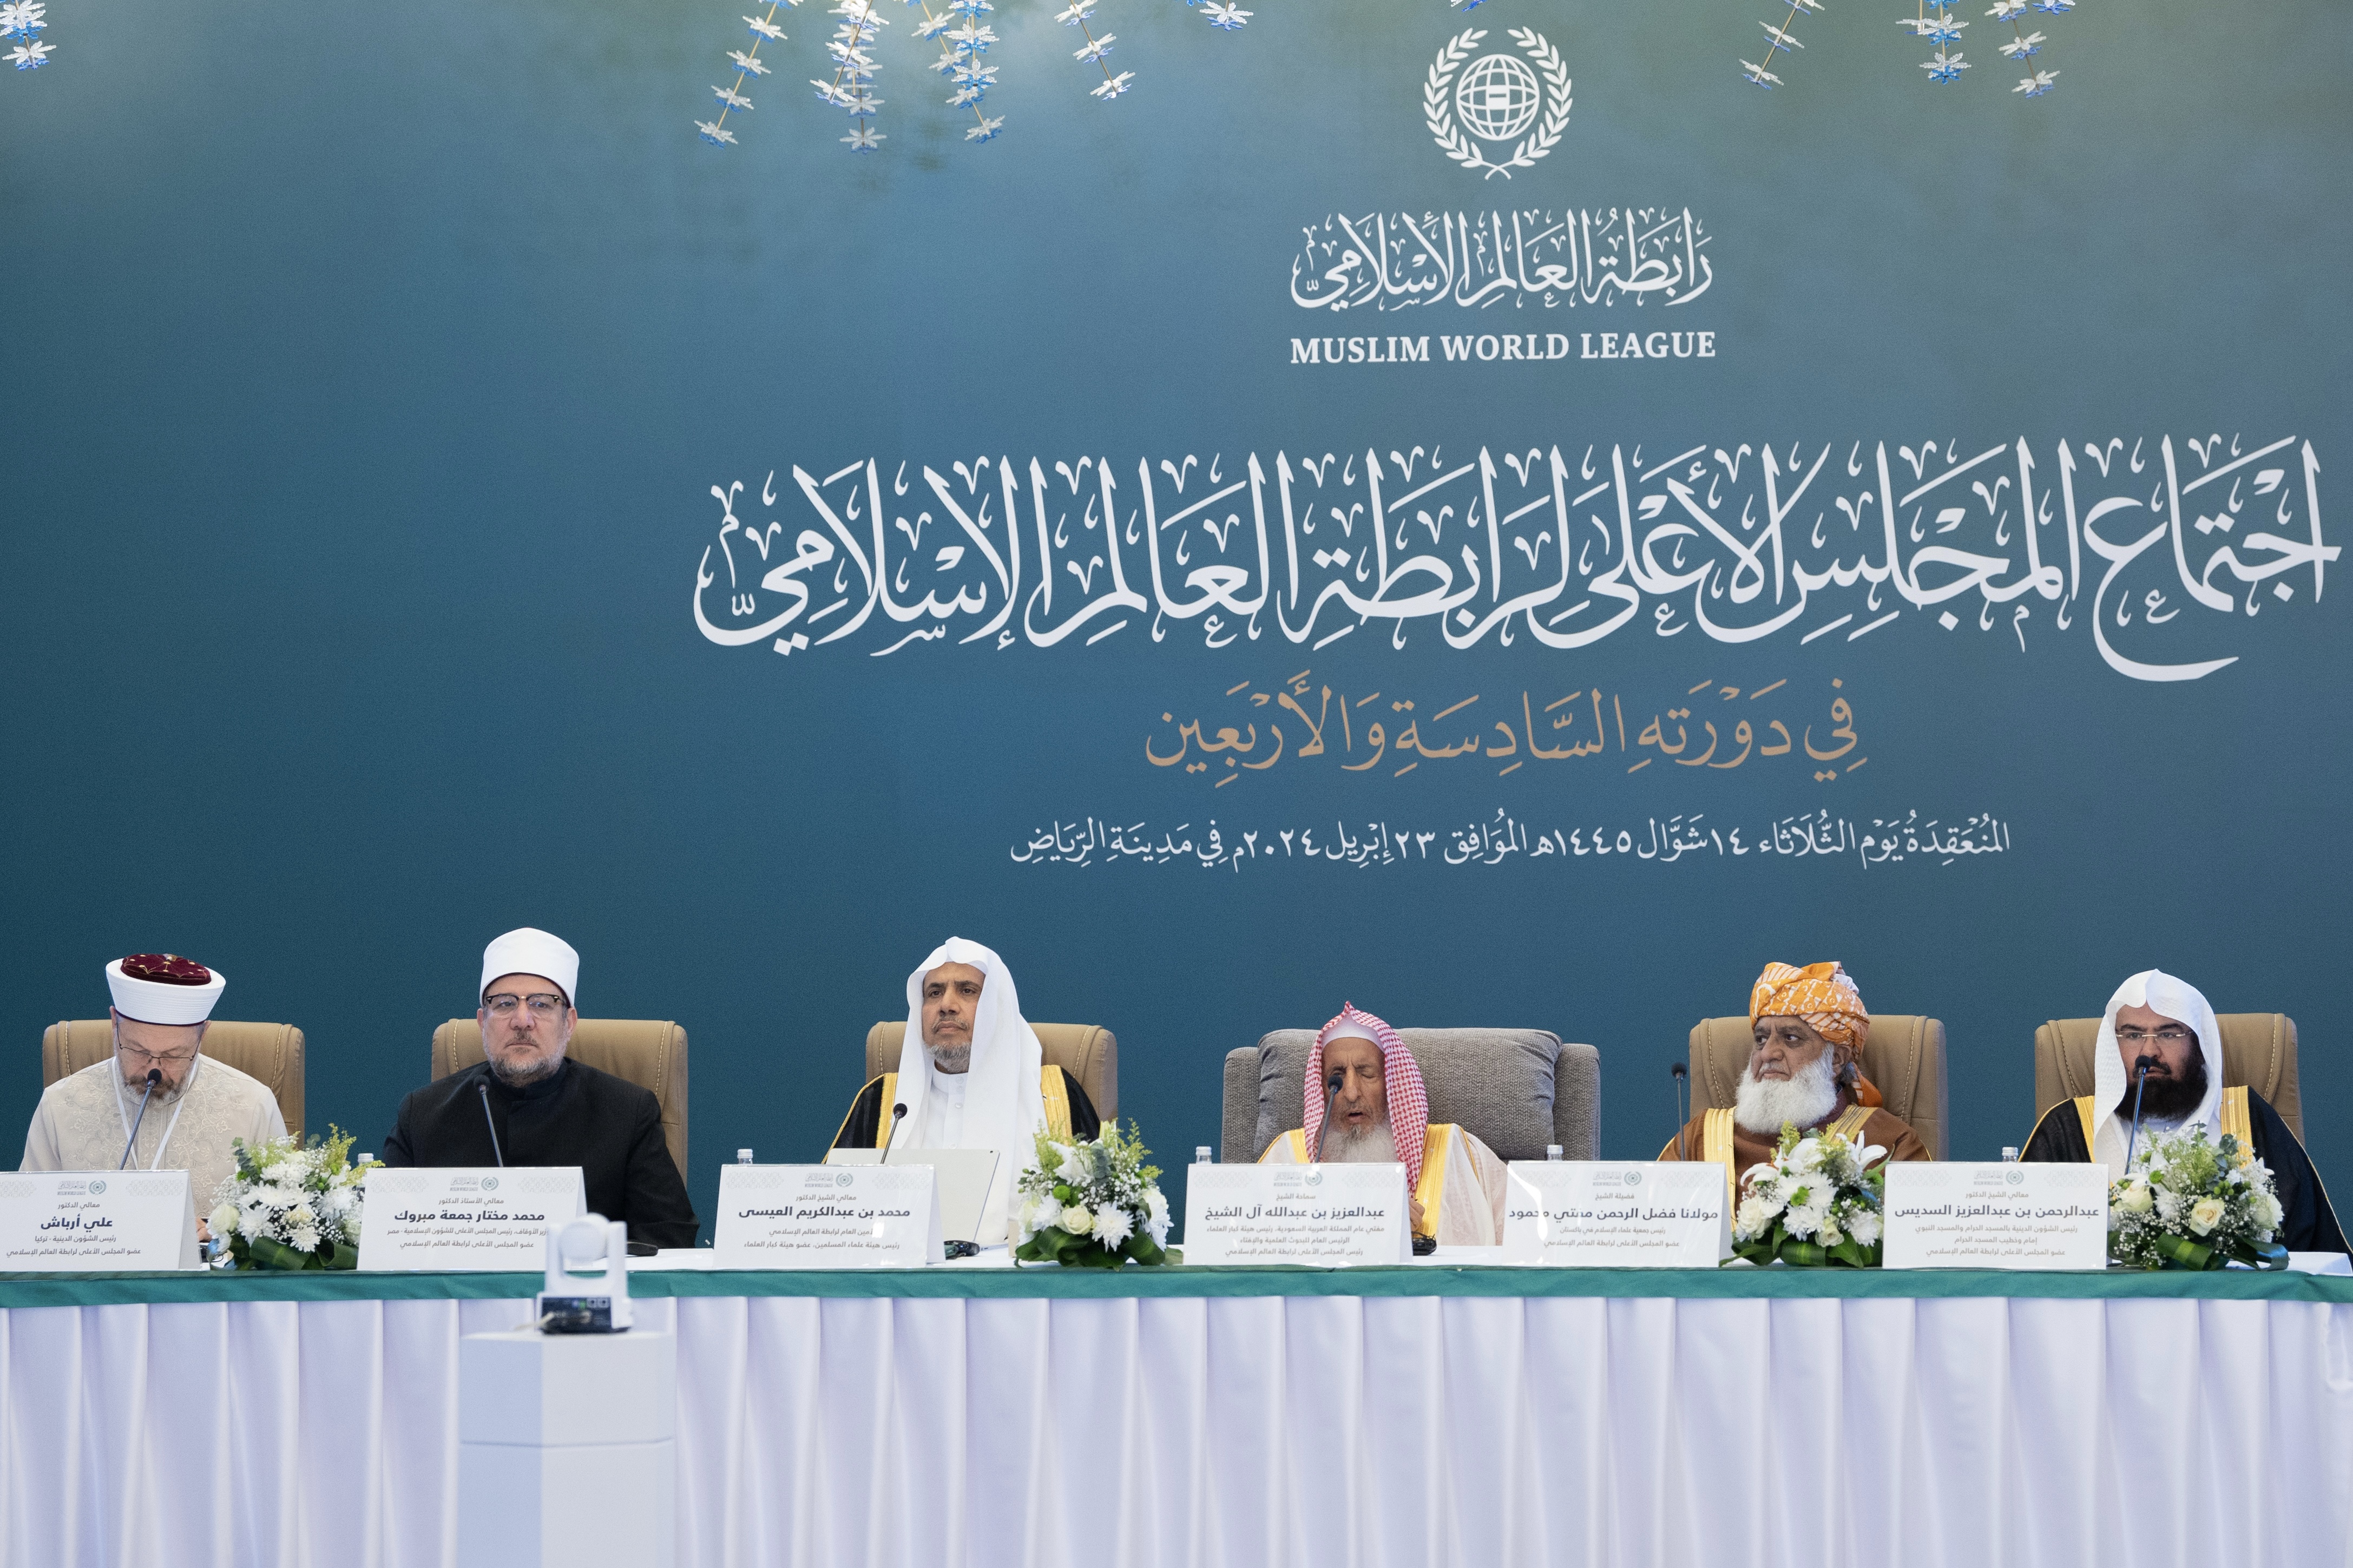 سبعُ قضايا ملِحَّة على جدول أعمال الدورة الـ46 للمجلس الأعلى لرابطة العالم الإسلامي